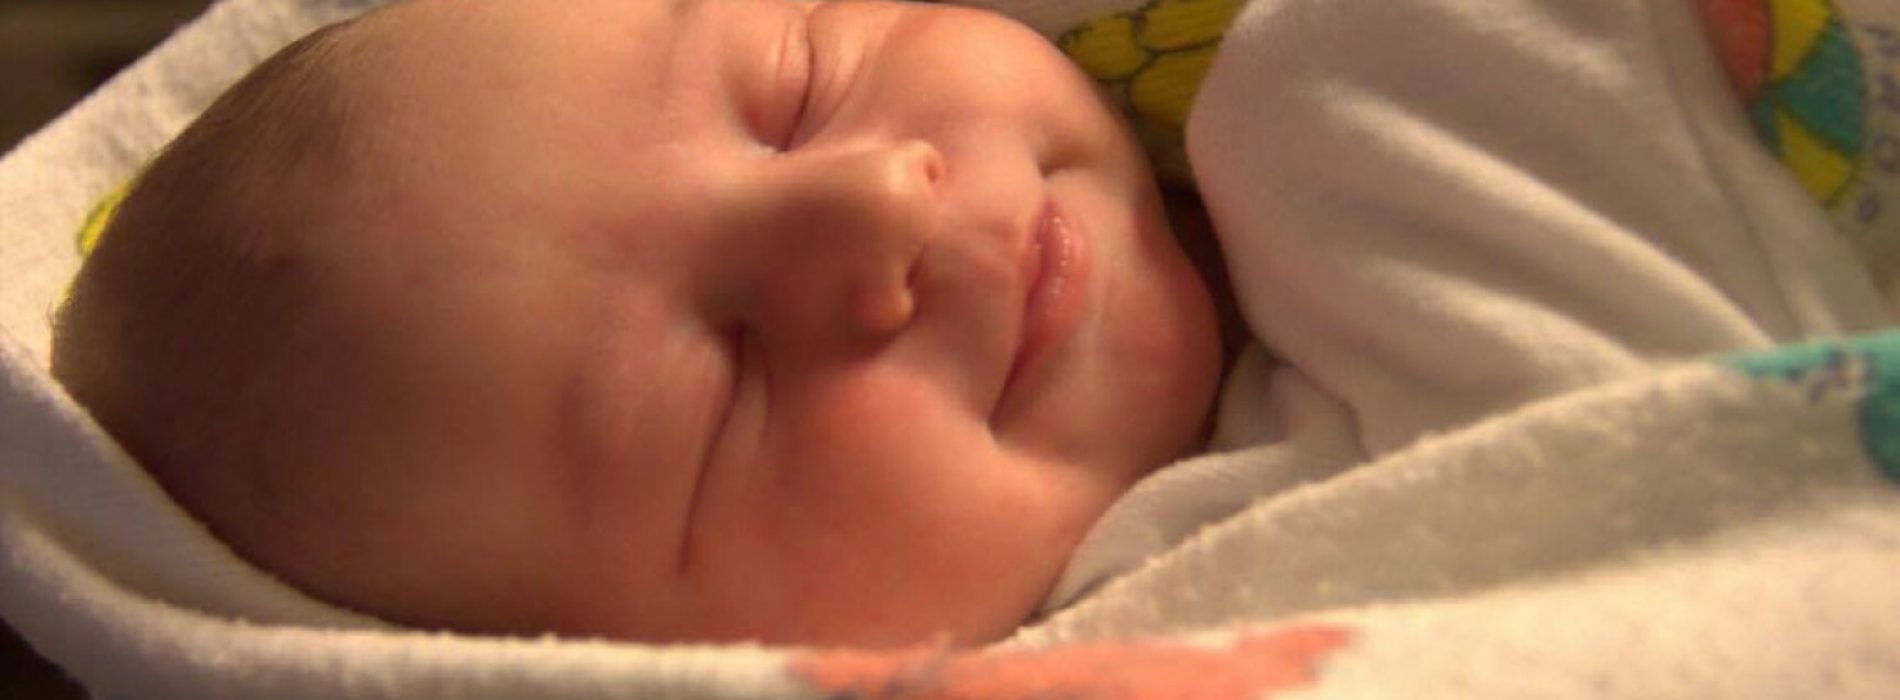 Ze luisterde naar haar dokters – en haar baby stierf. Nu waarschuwt ze voor borstvoeding